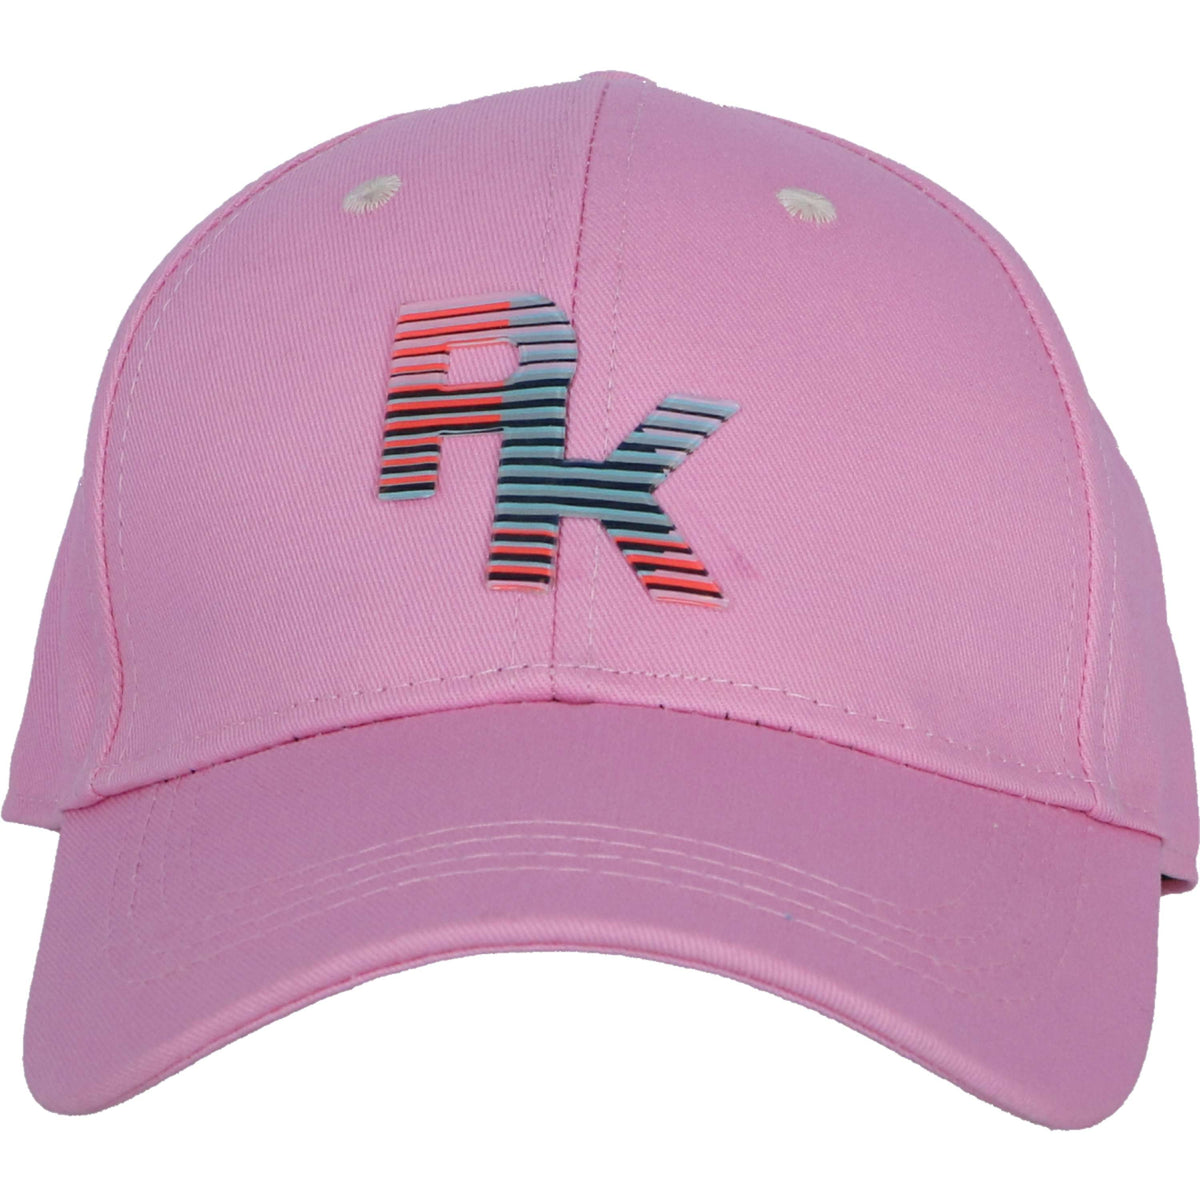 PK Cap Candy Pink